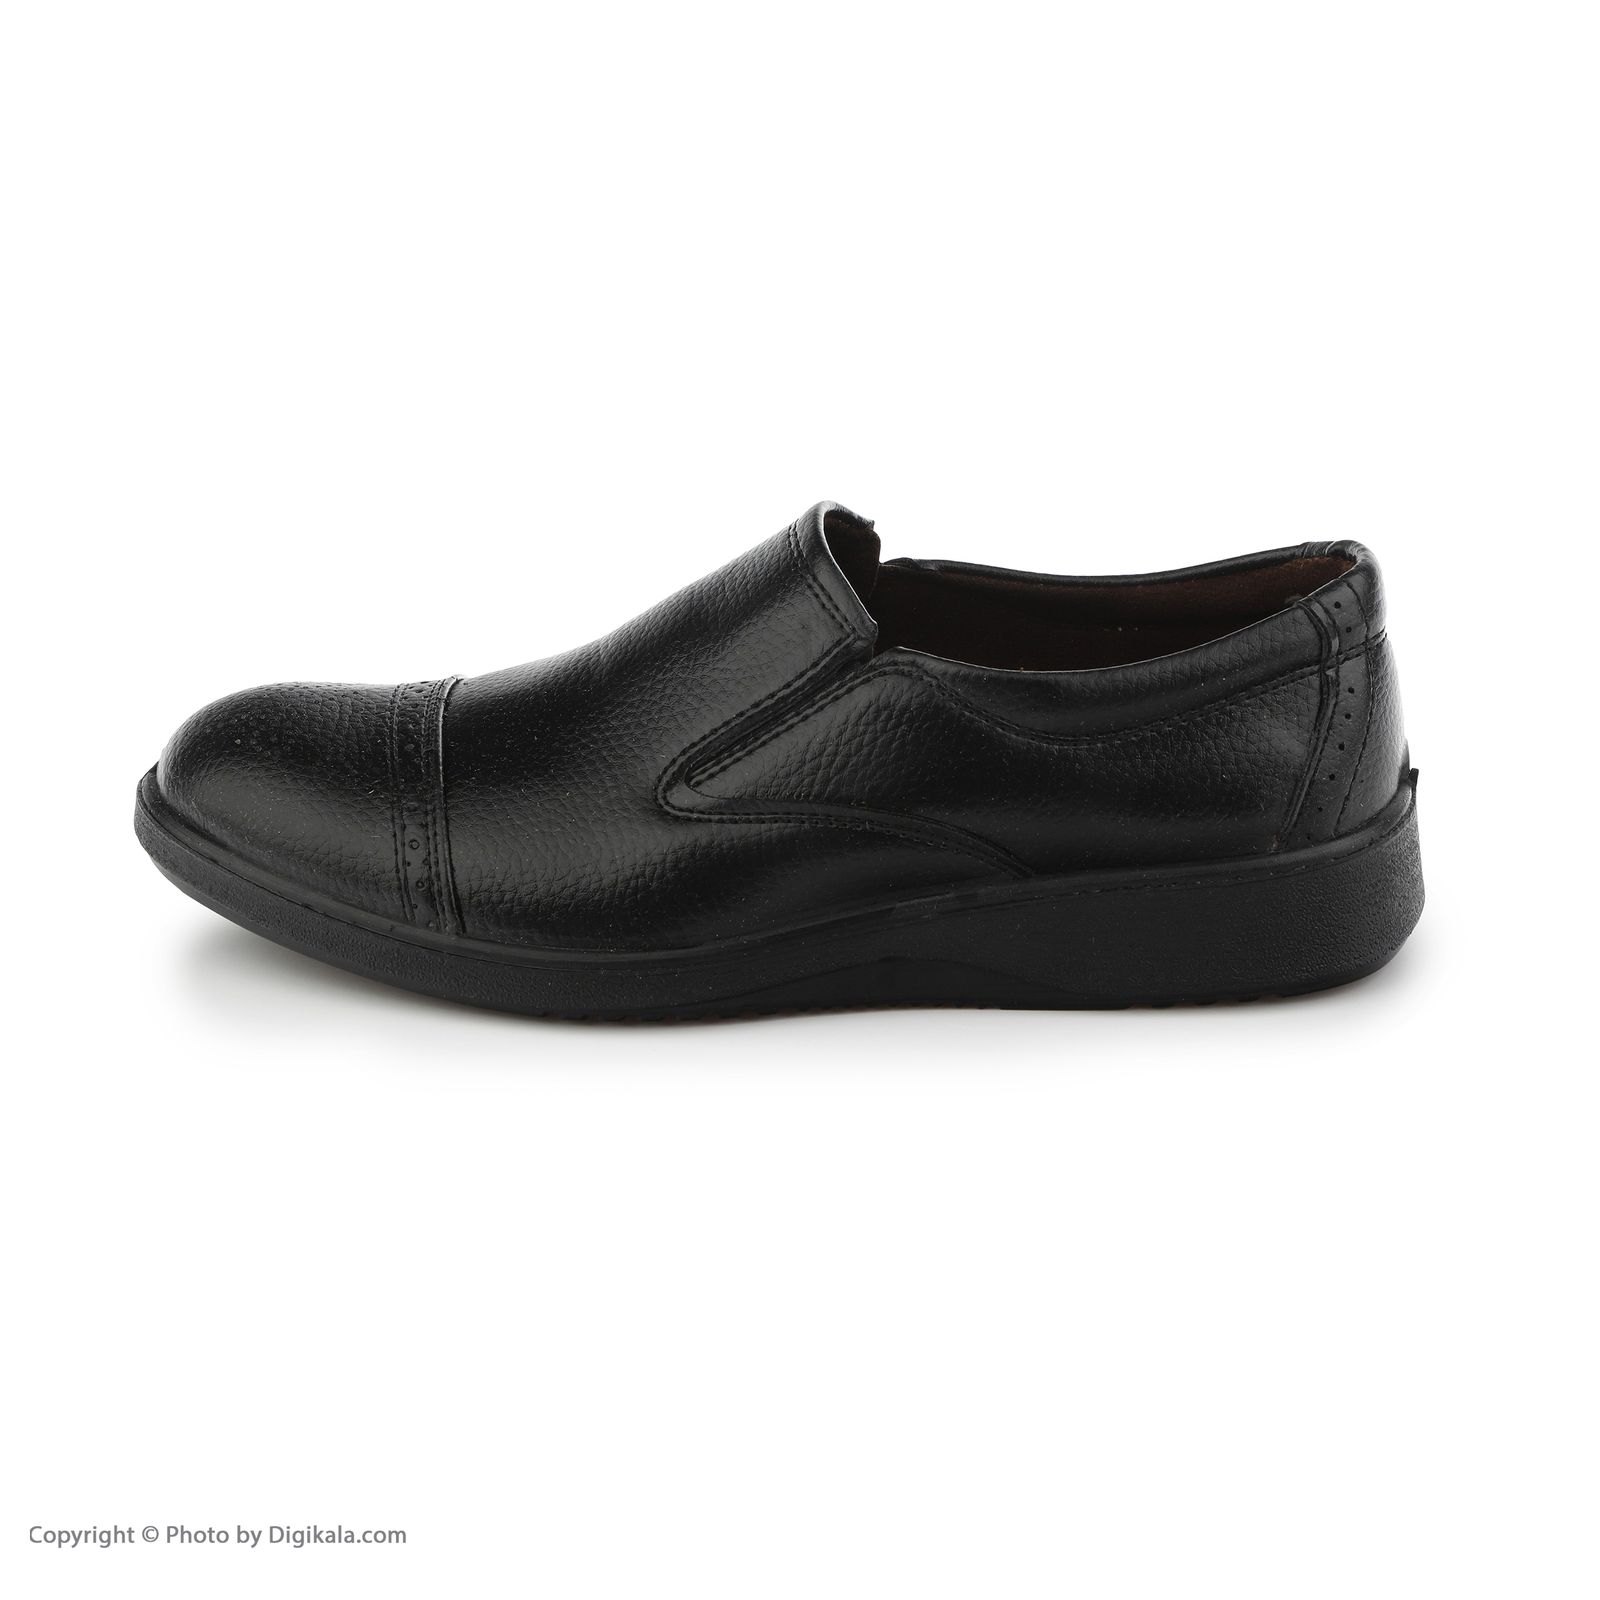 کفش روزمره مردانه کروماکی مدل طبی چرم مصنوعی فلوتر کد 1002 -  - 3